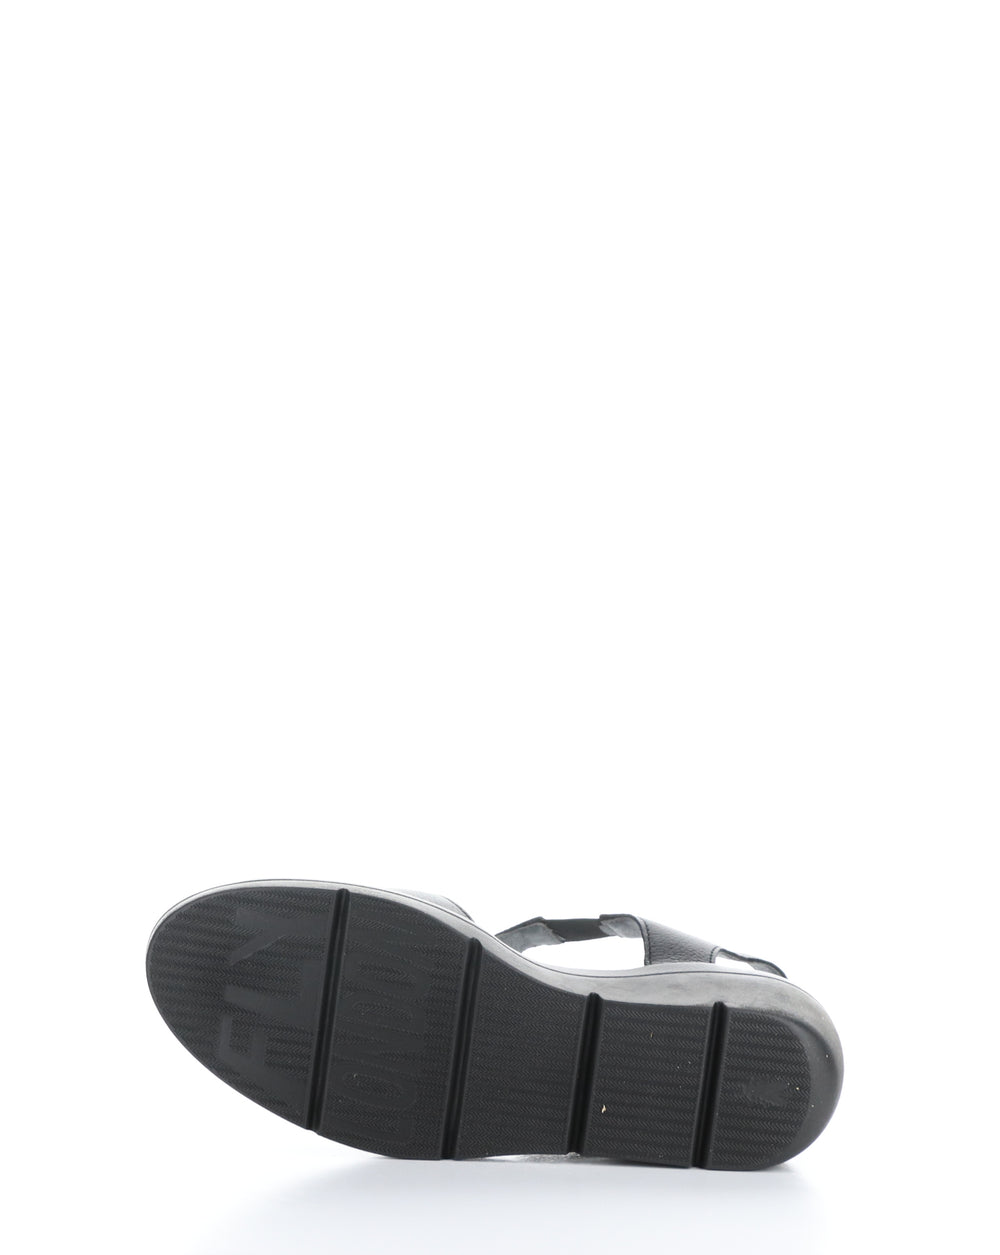 NOVA932FLY 000 BLACK Velcro Sandals